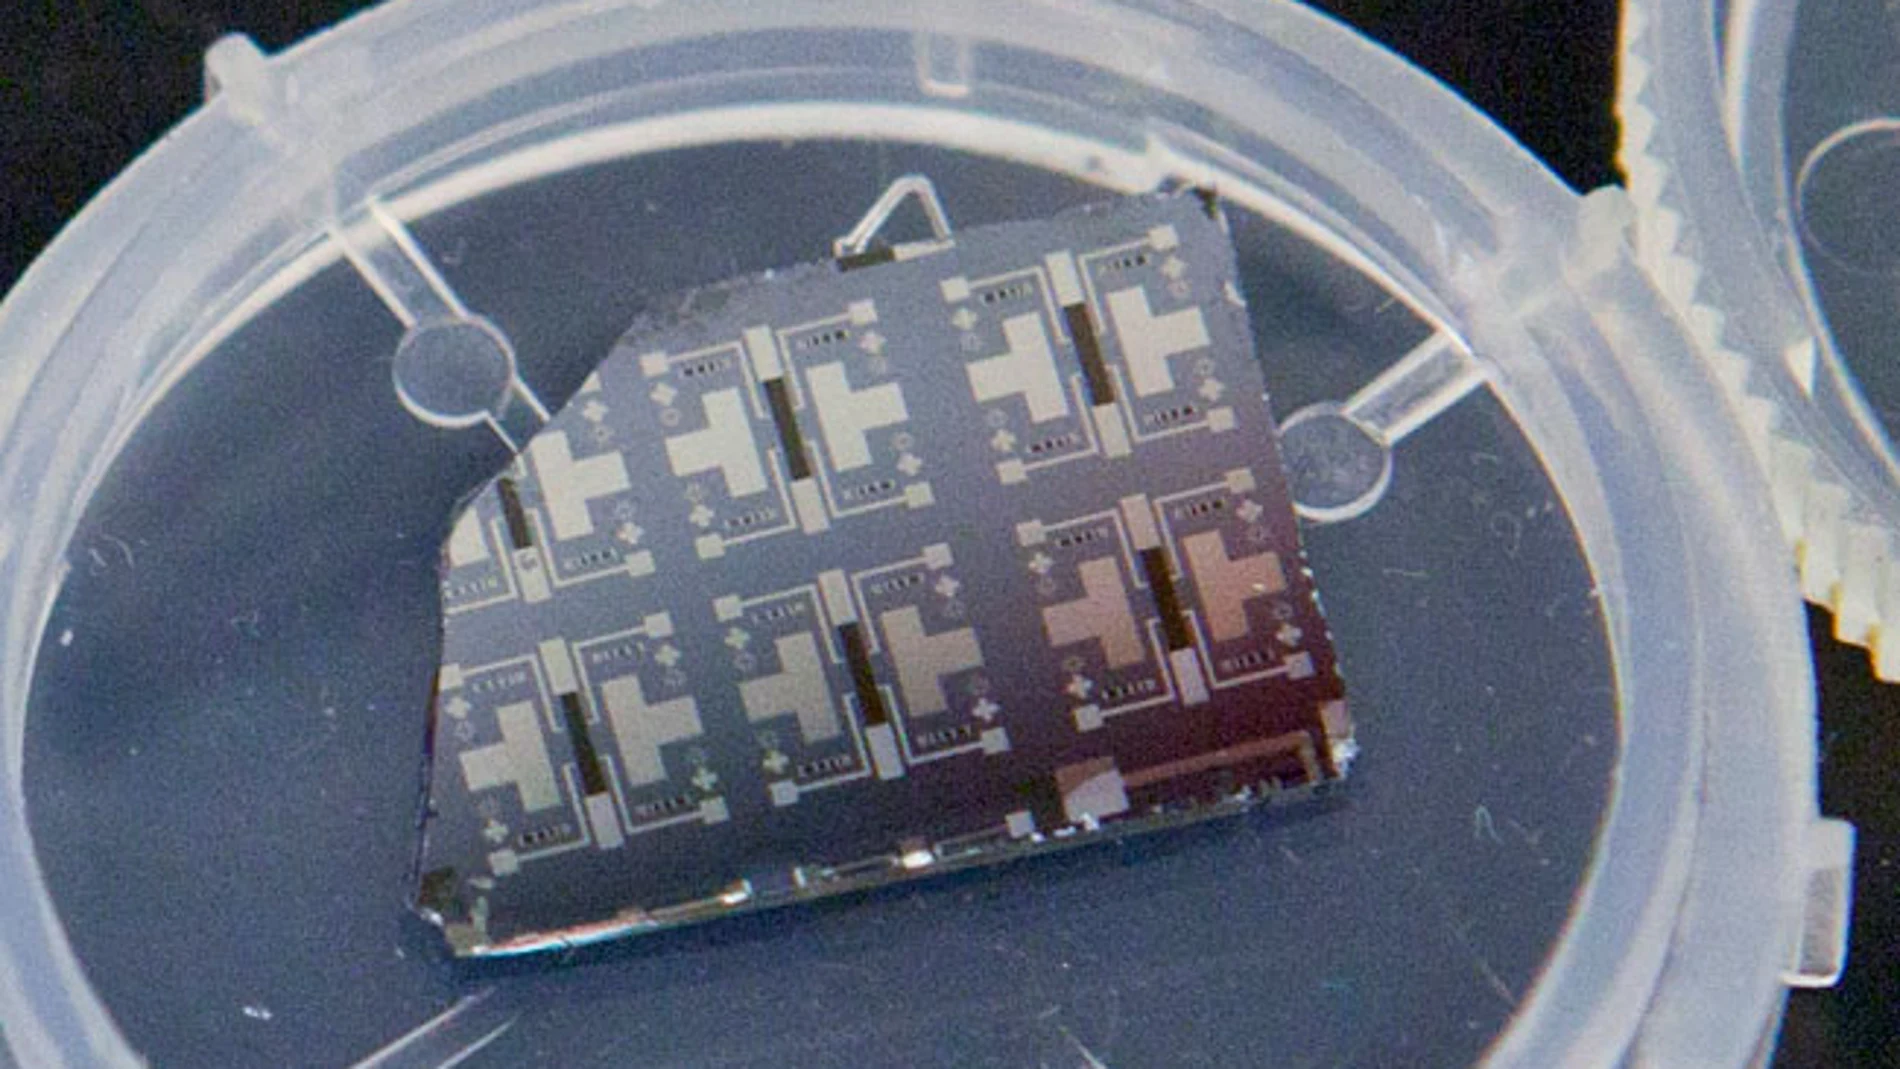 Varios prototipos del transistor sináptico pueden verse en este chip de silicio. Imagen: Eliza Grinnell.